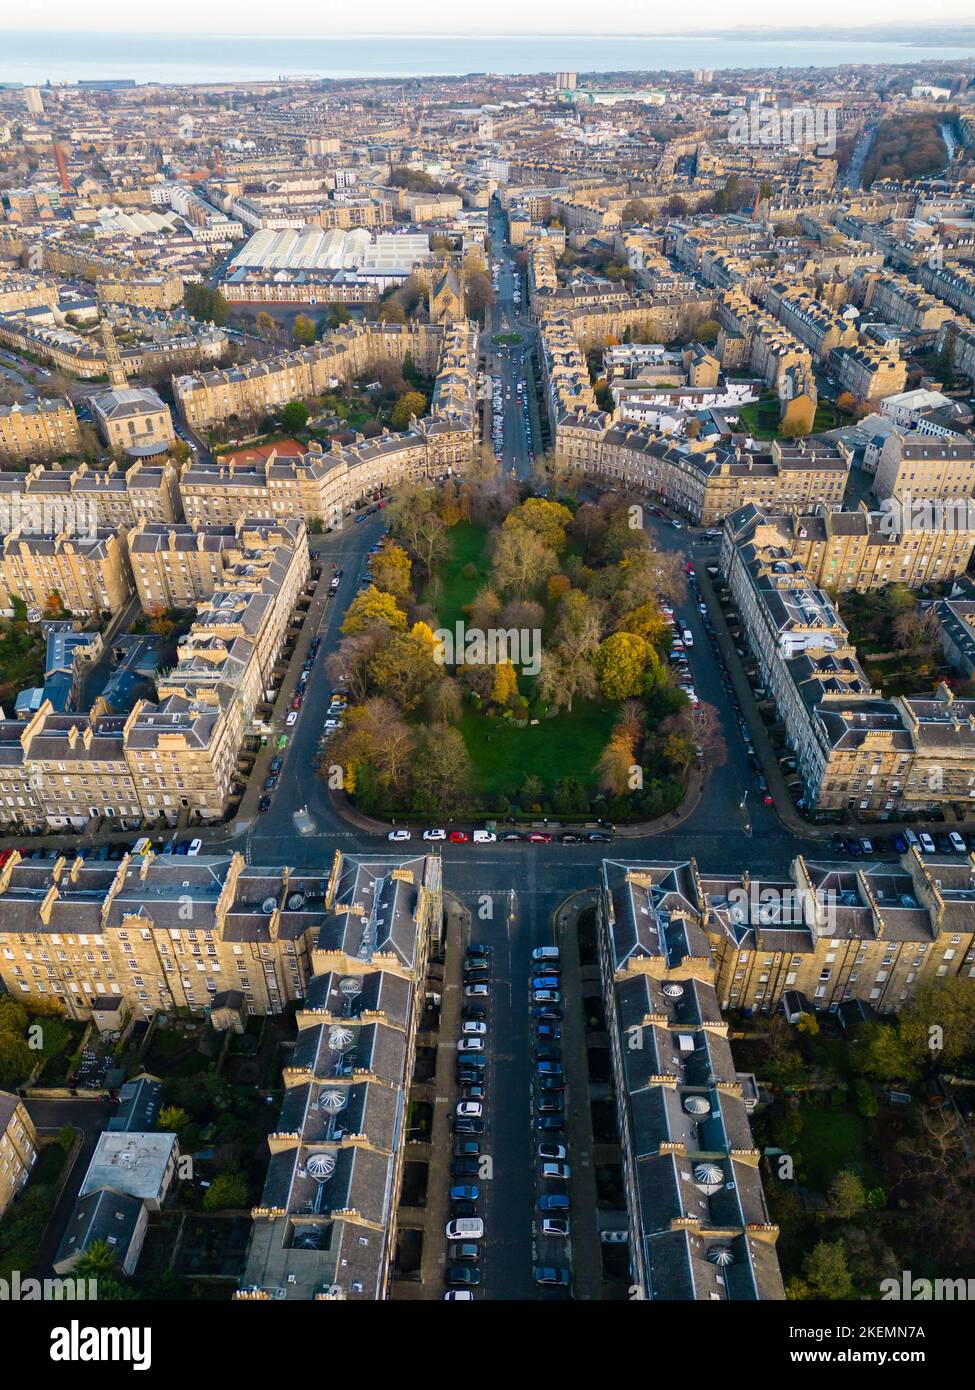 Vista aerea di Drummond Place a Edimburgo New Town, patrimonio dell'umanità dell'UNESCO, Scozia, Regno Unito Foto Stock